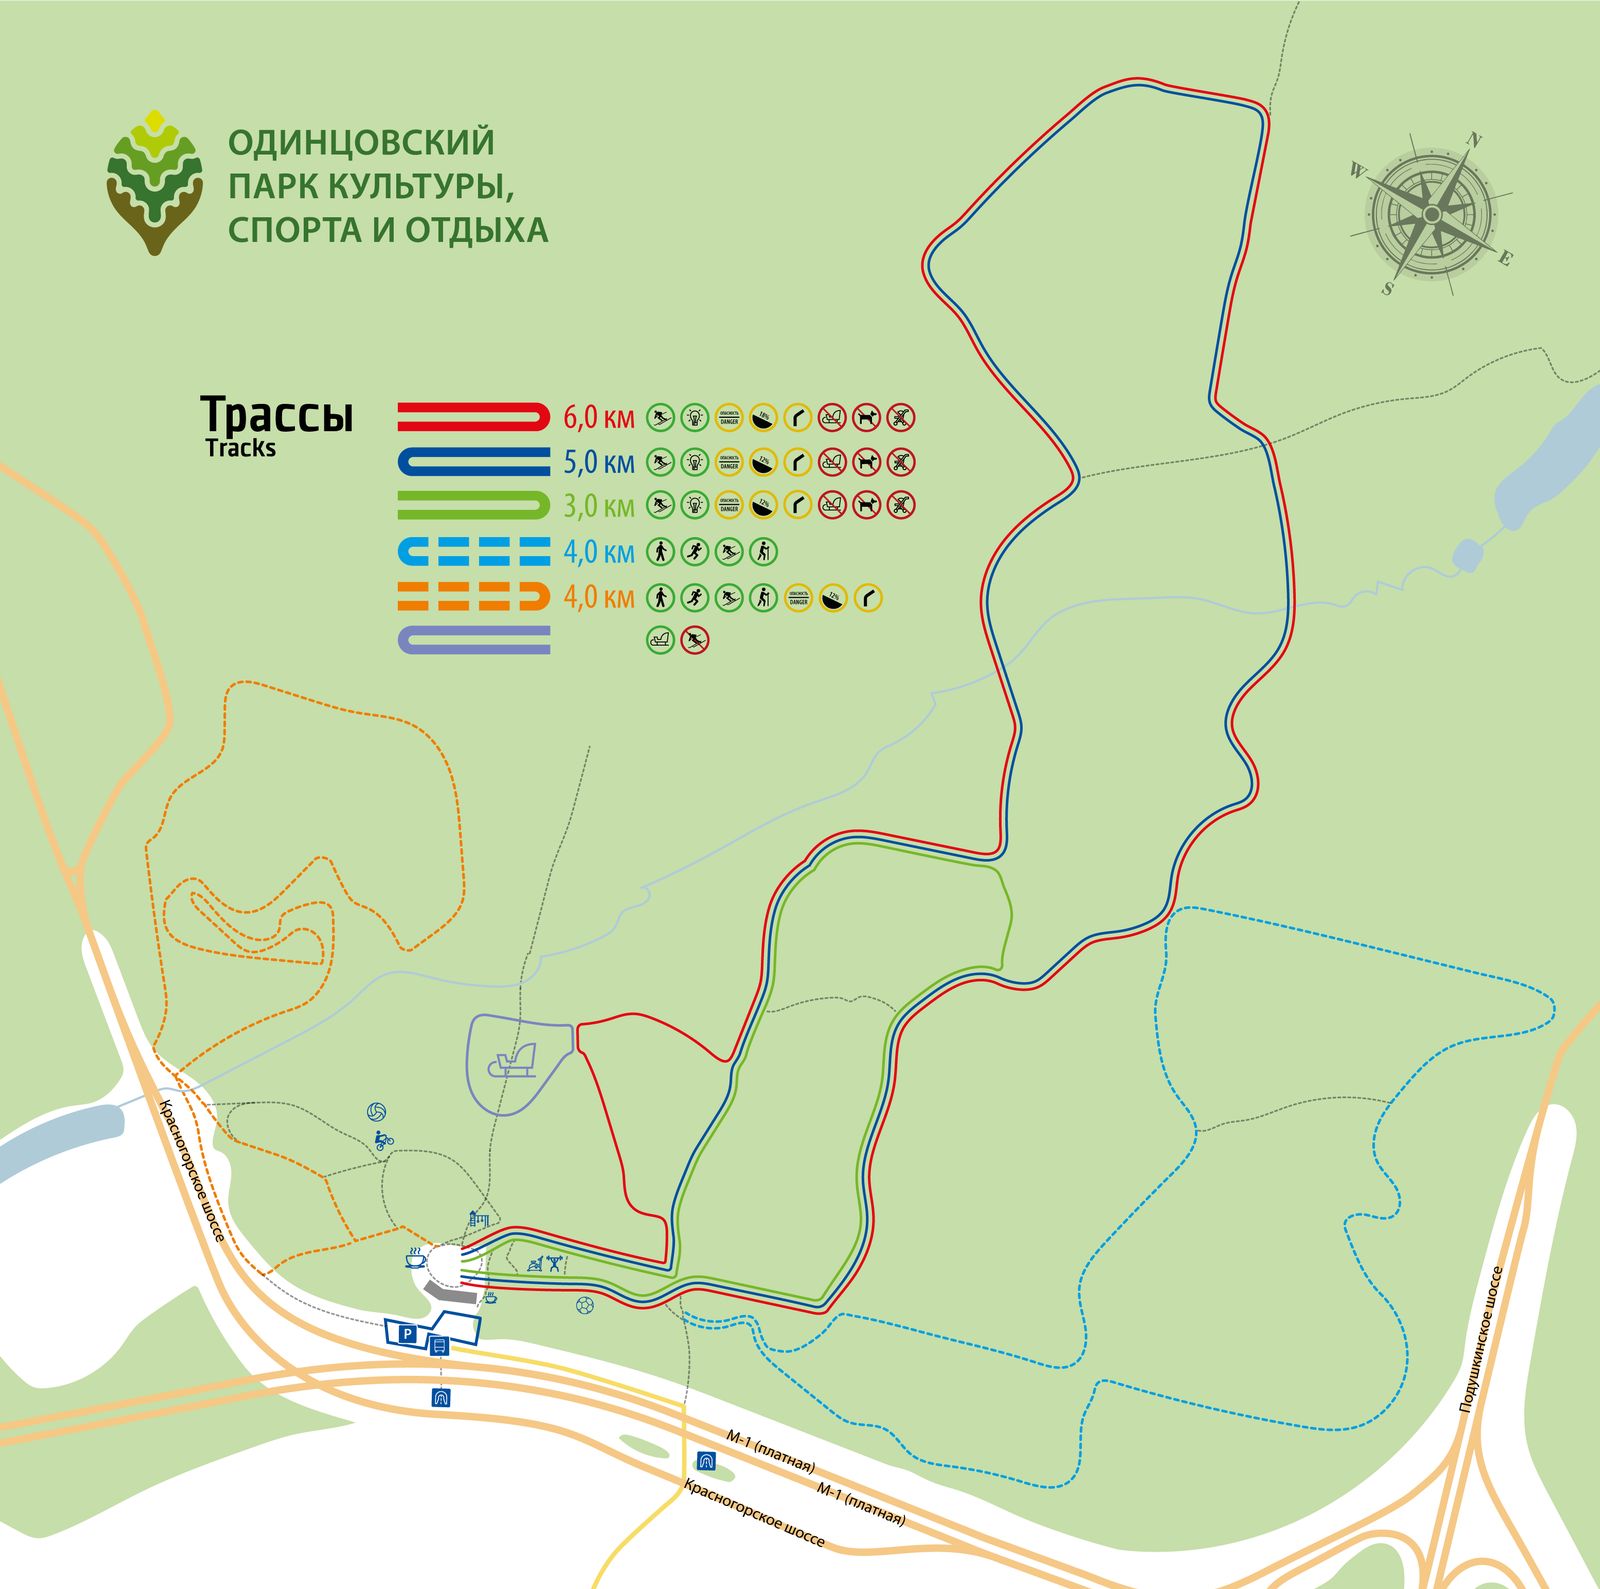 Одинцовский парк культуры, спорта и отдыха | Трасса для беговых лыж 